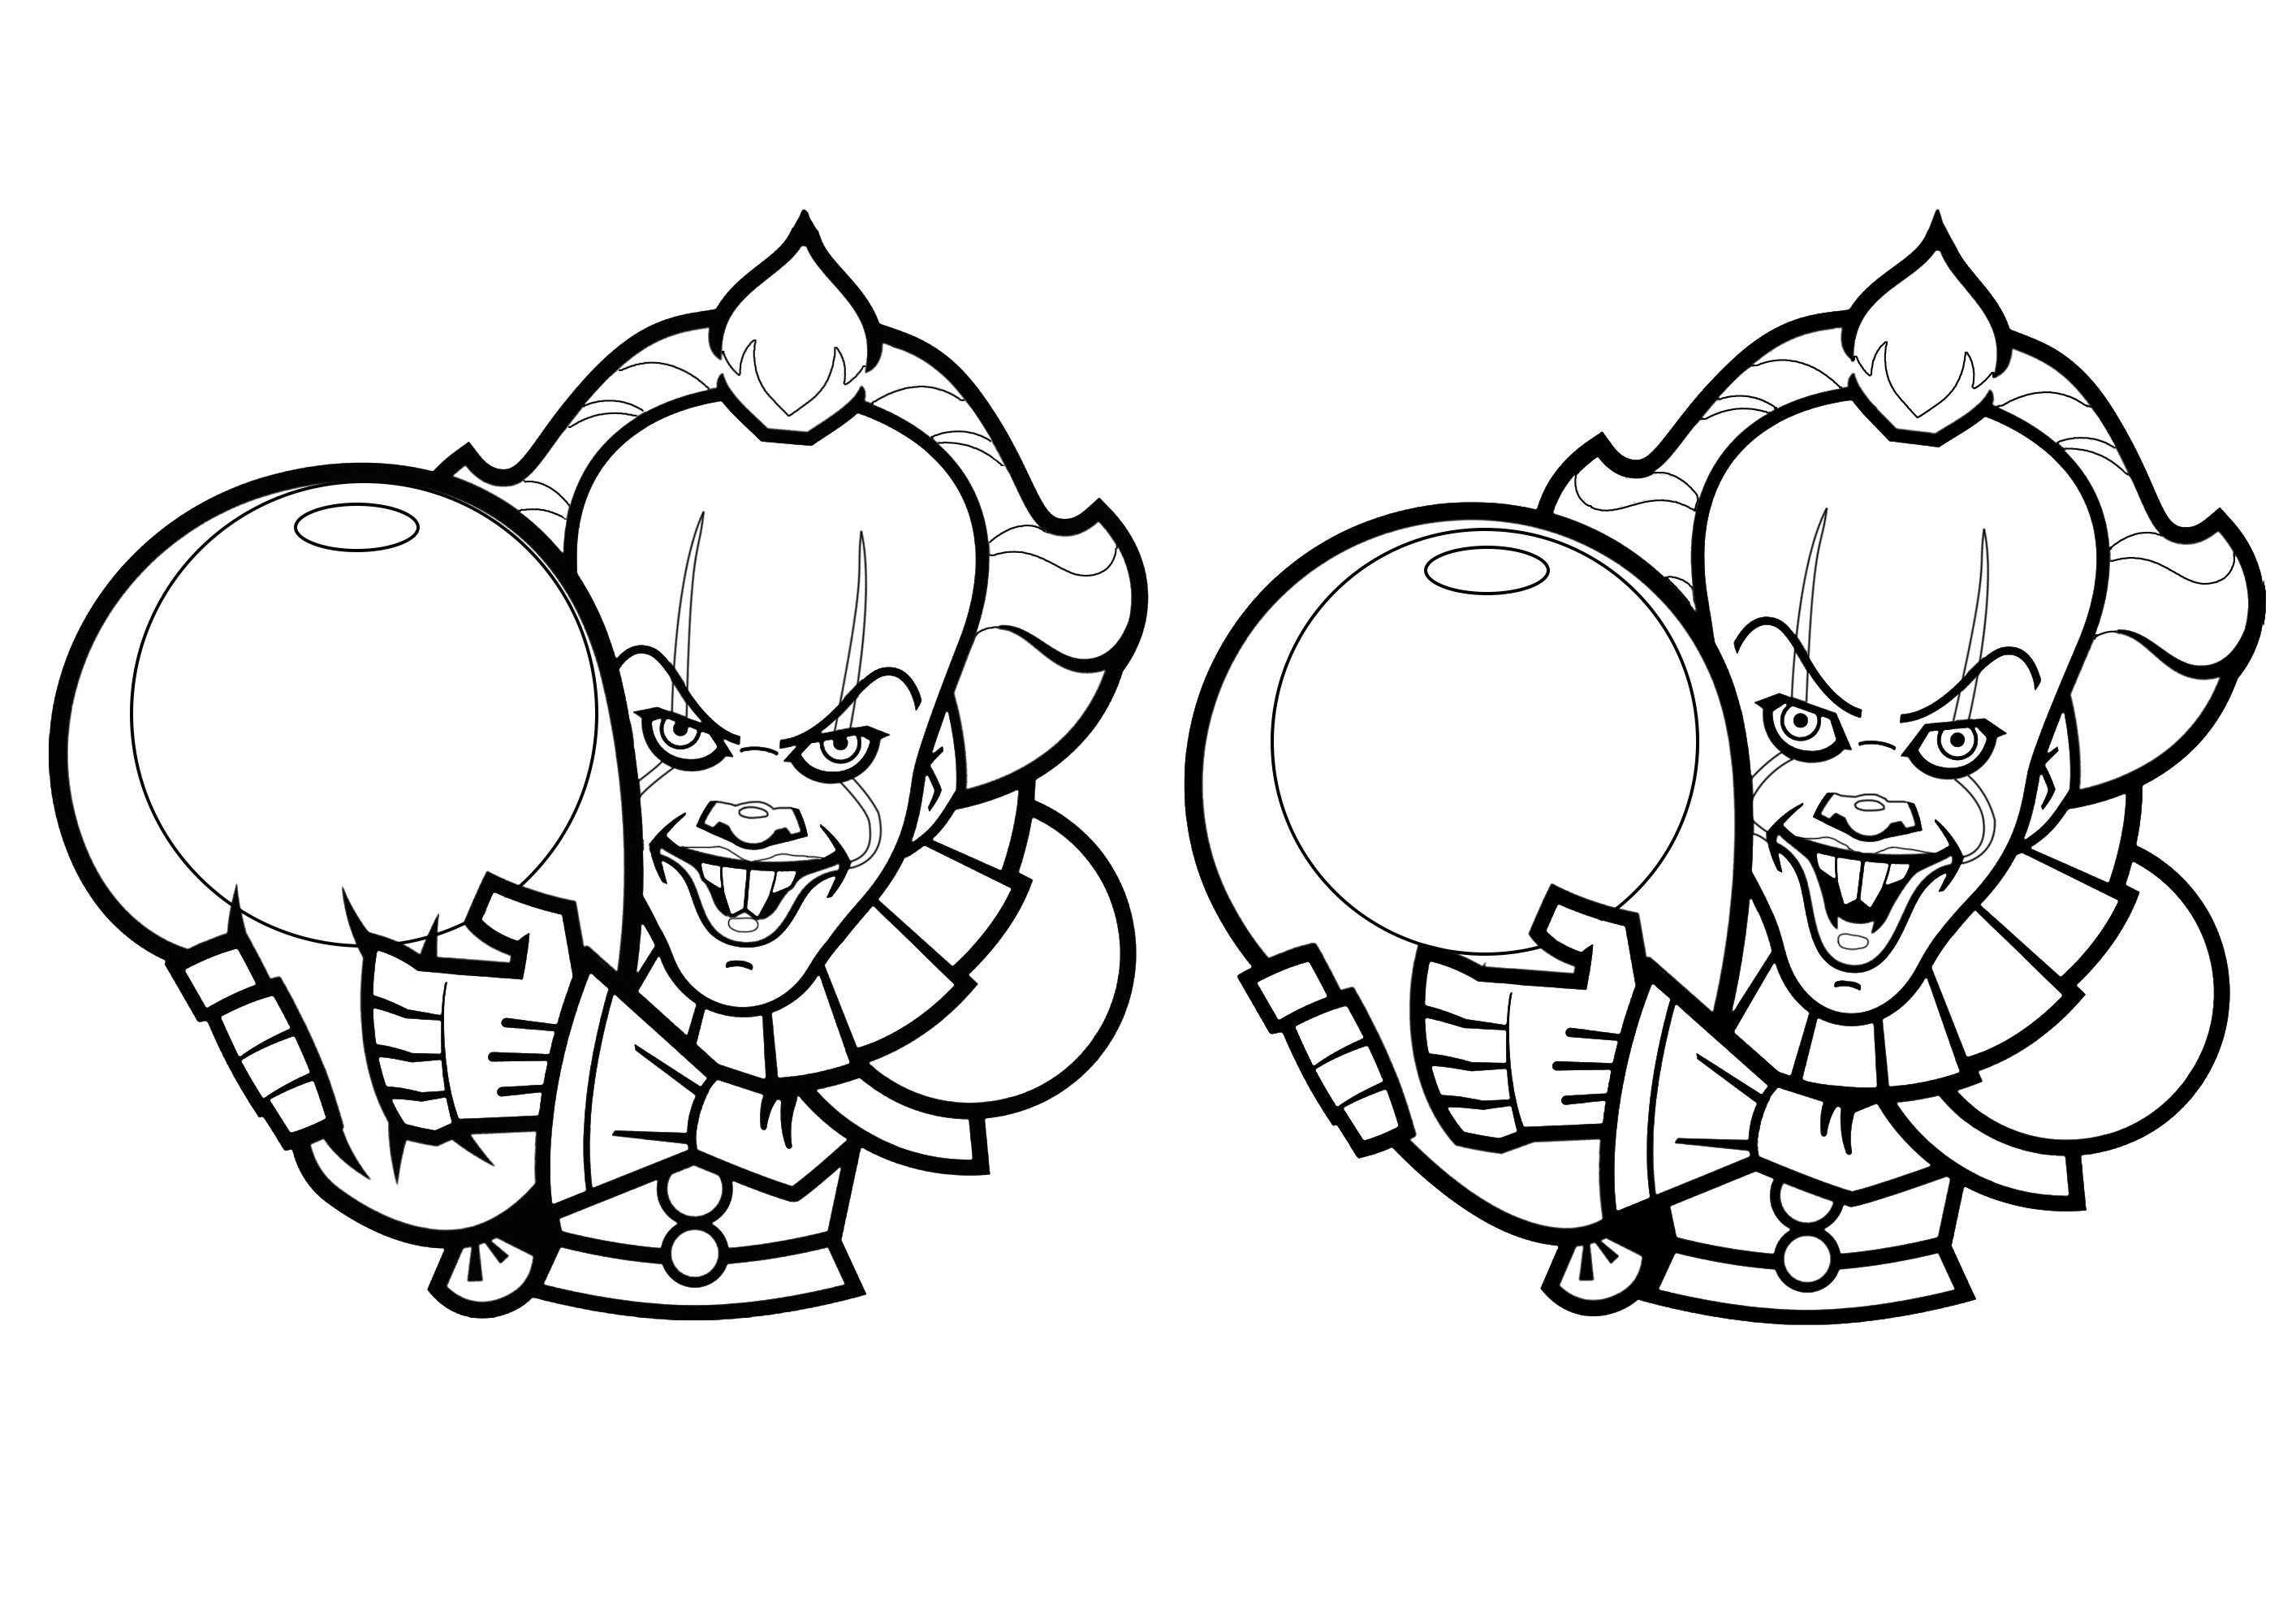 Colorate queste due clippart vettoriali che rappresentano Pennywise, il clown dei romanzi e dei film di It.